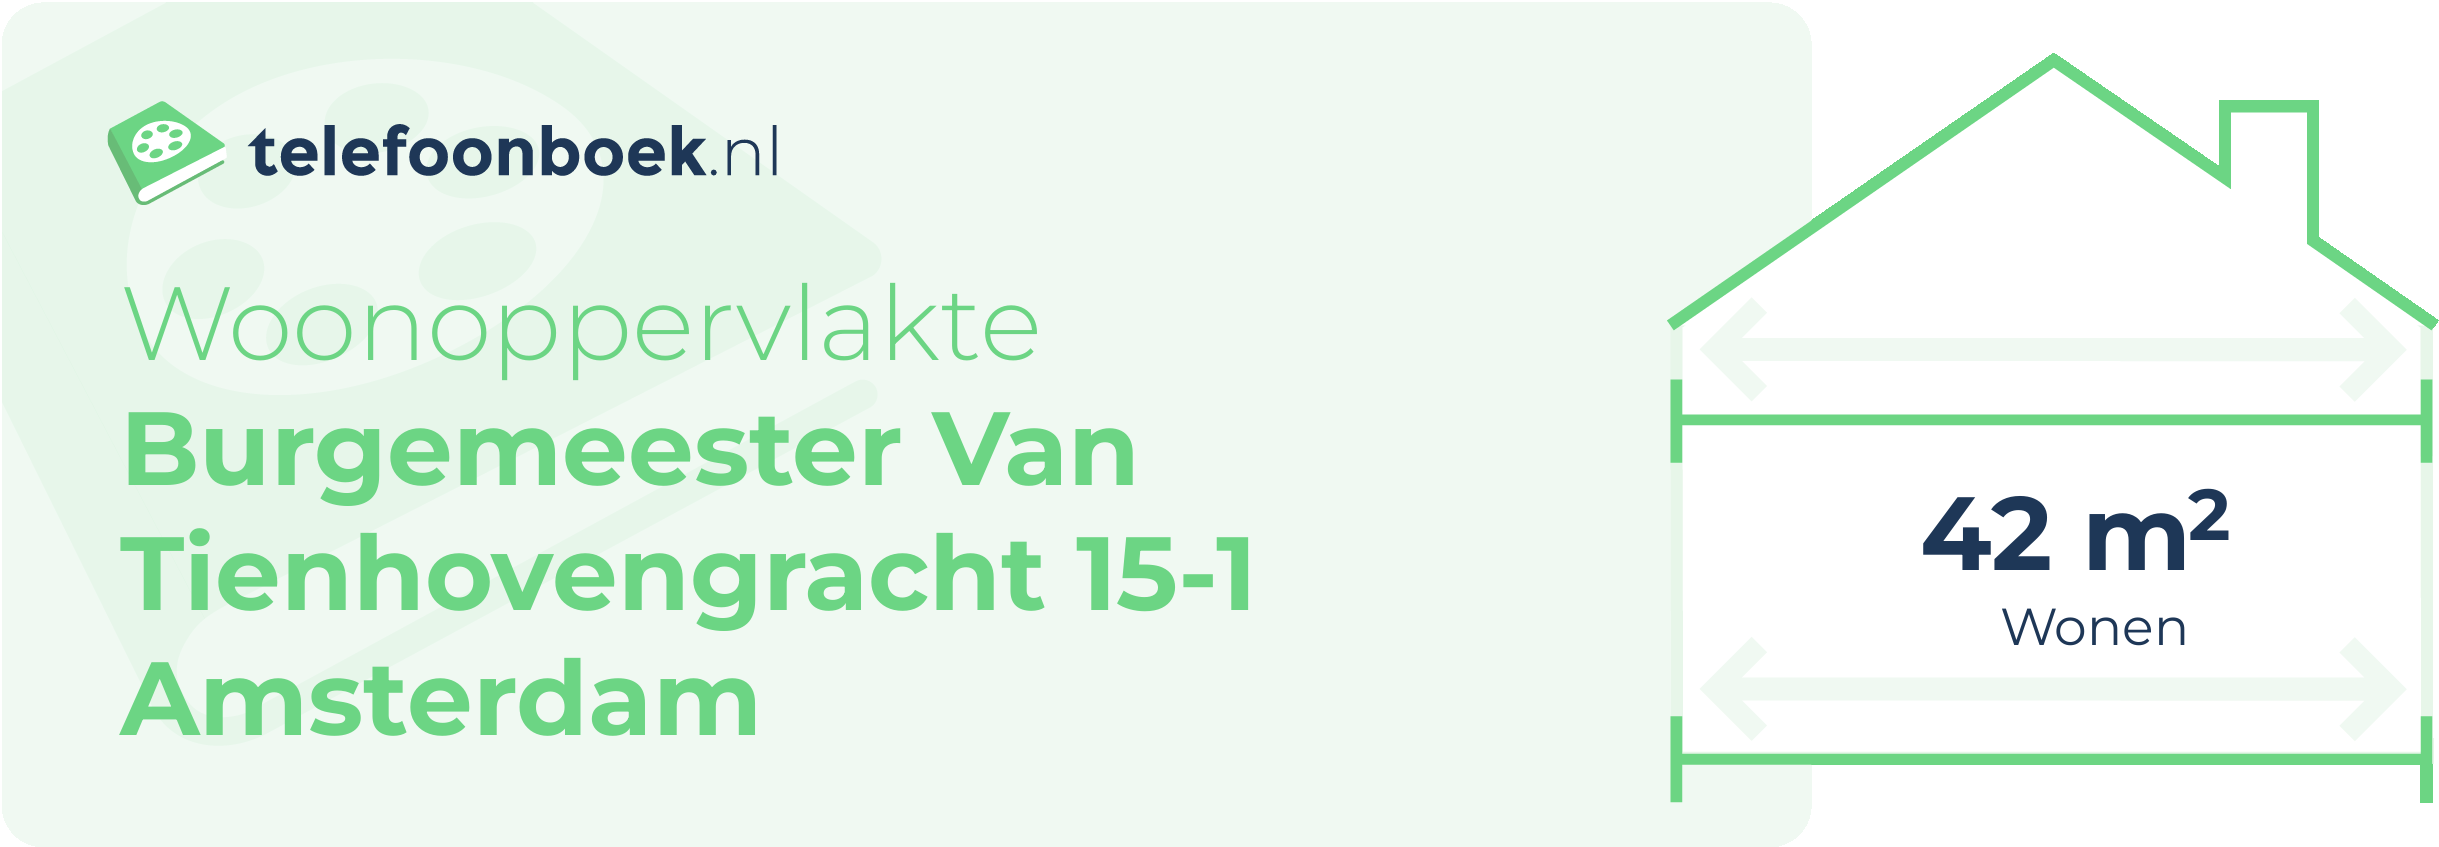 Woonoppervlakte Burgemeester Van Tienhovengracht 15-1 Amsterdam